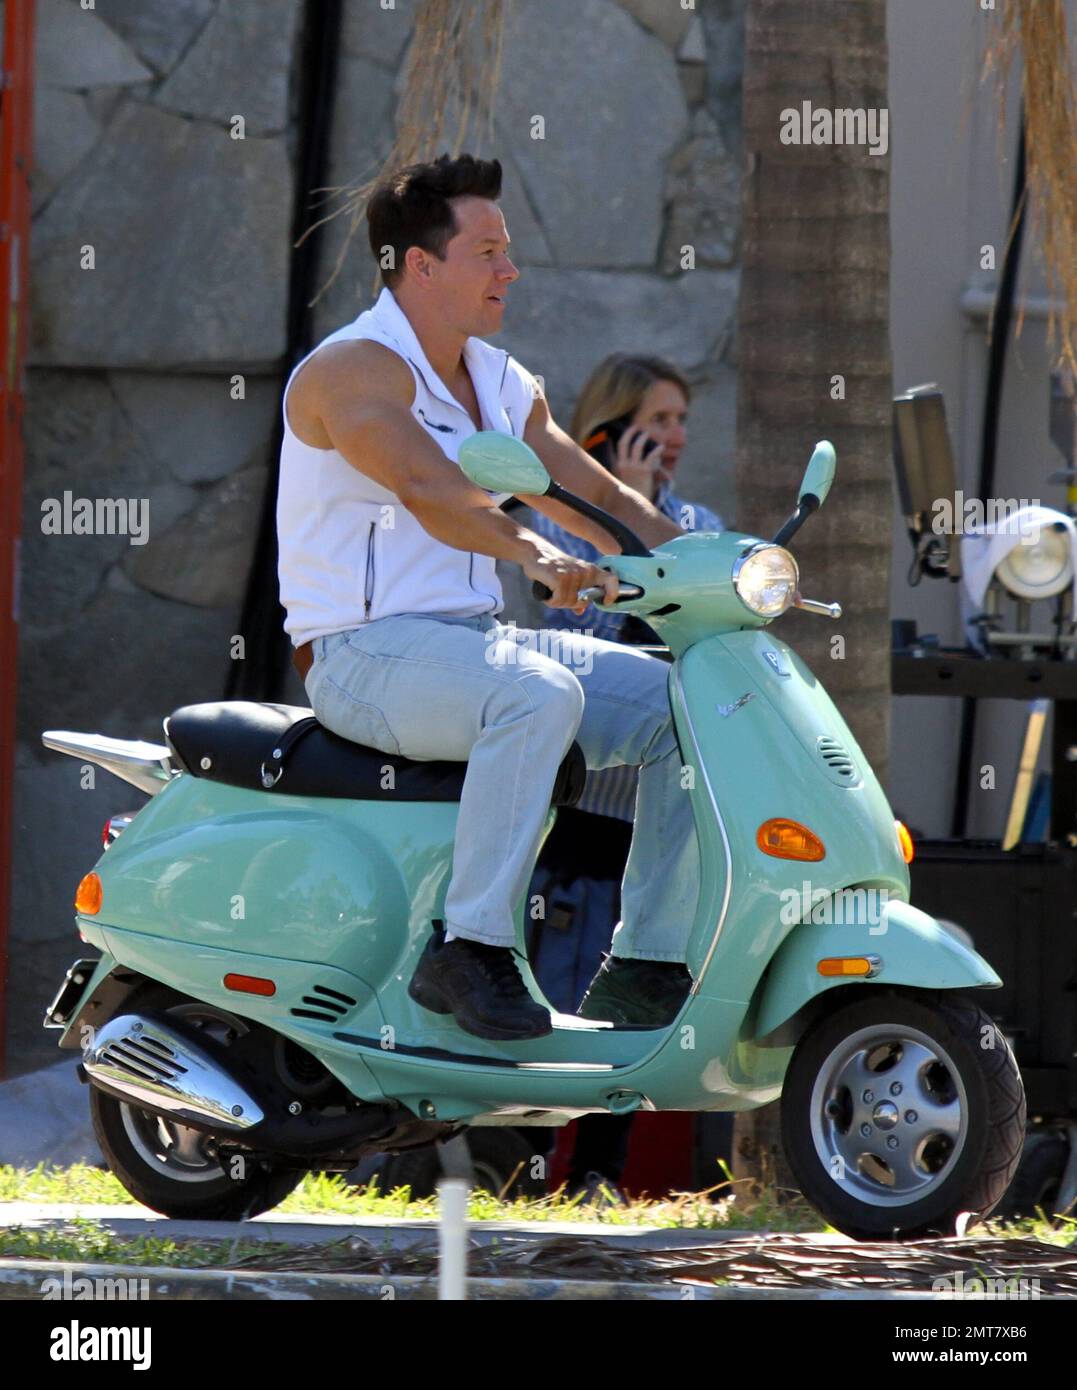 Mark Wahlberg monta una Vespa verde marino mientras filma escenas en el  lugar para su nueva película 'Pain and Gain' en Miami, FL. 25th de abril de  2012 Fotografía de stock - Alamy